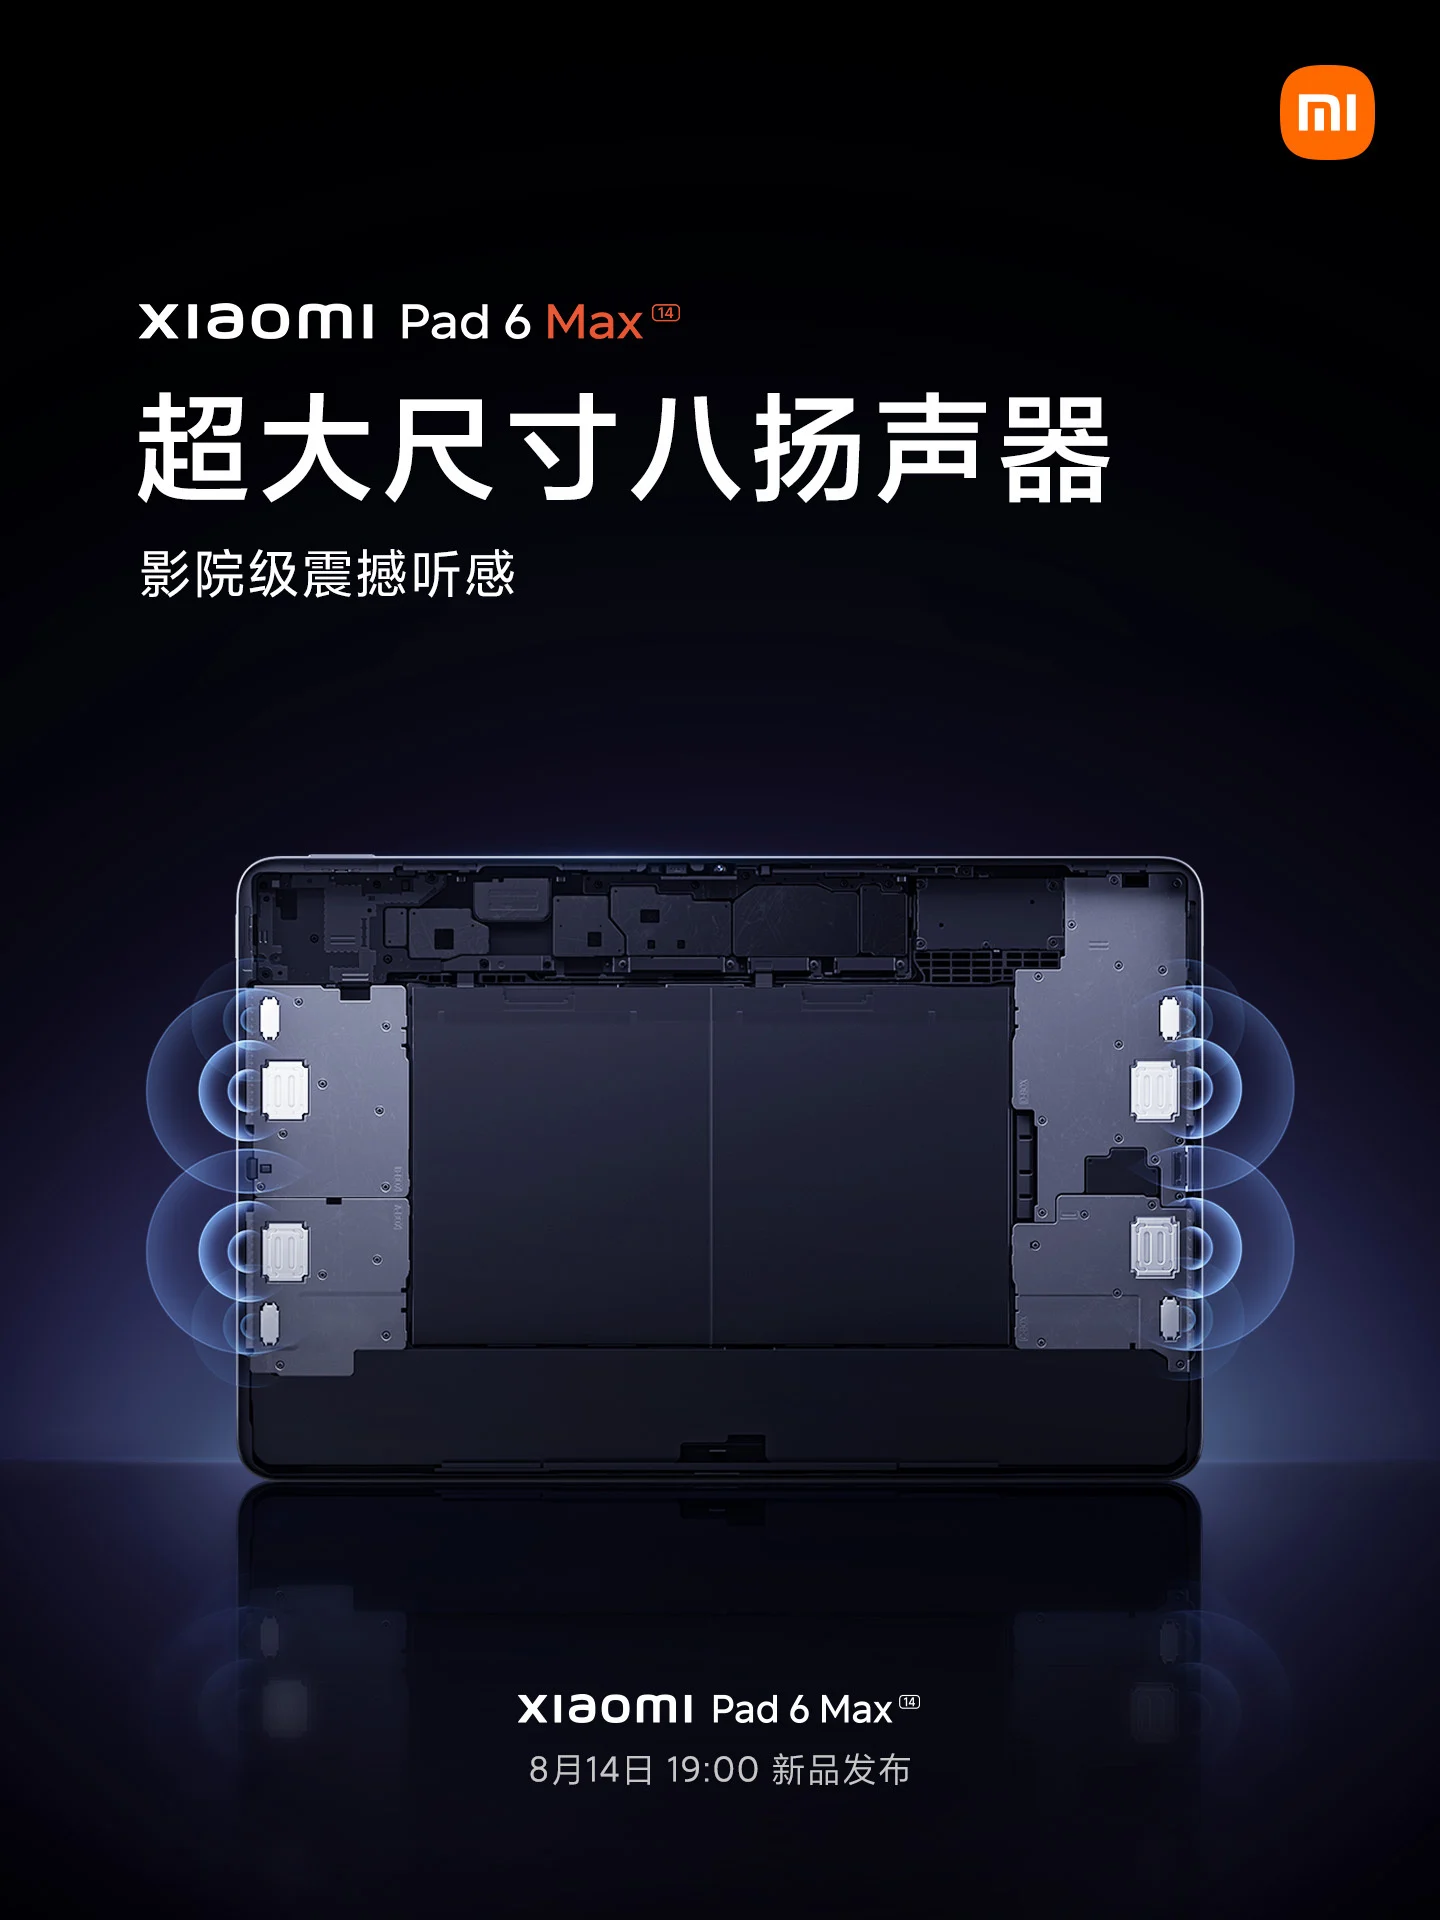 Размер дисплея Xiaomi Pad 6 Max, чипсет, аккумулятор и другие подробности подтверждены официально